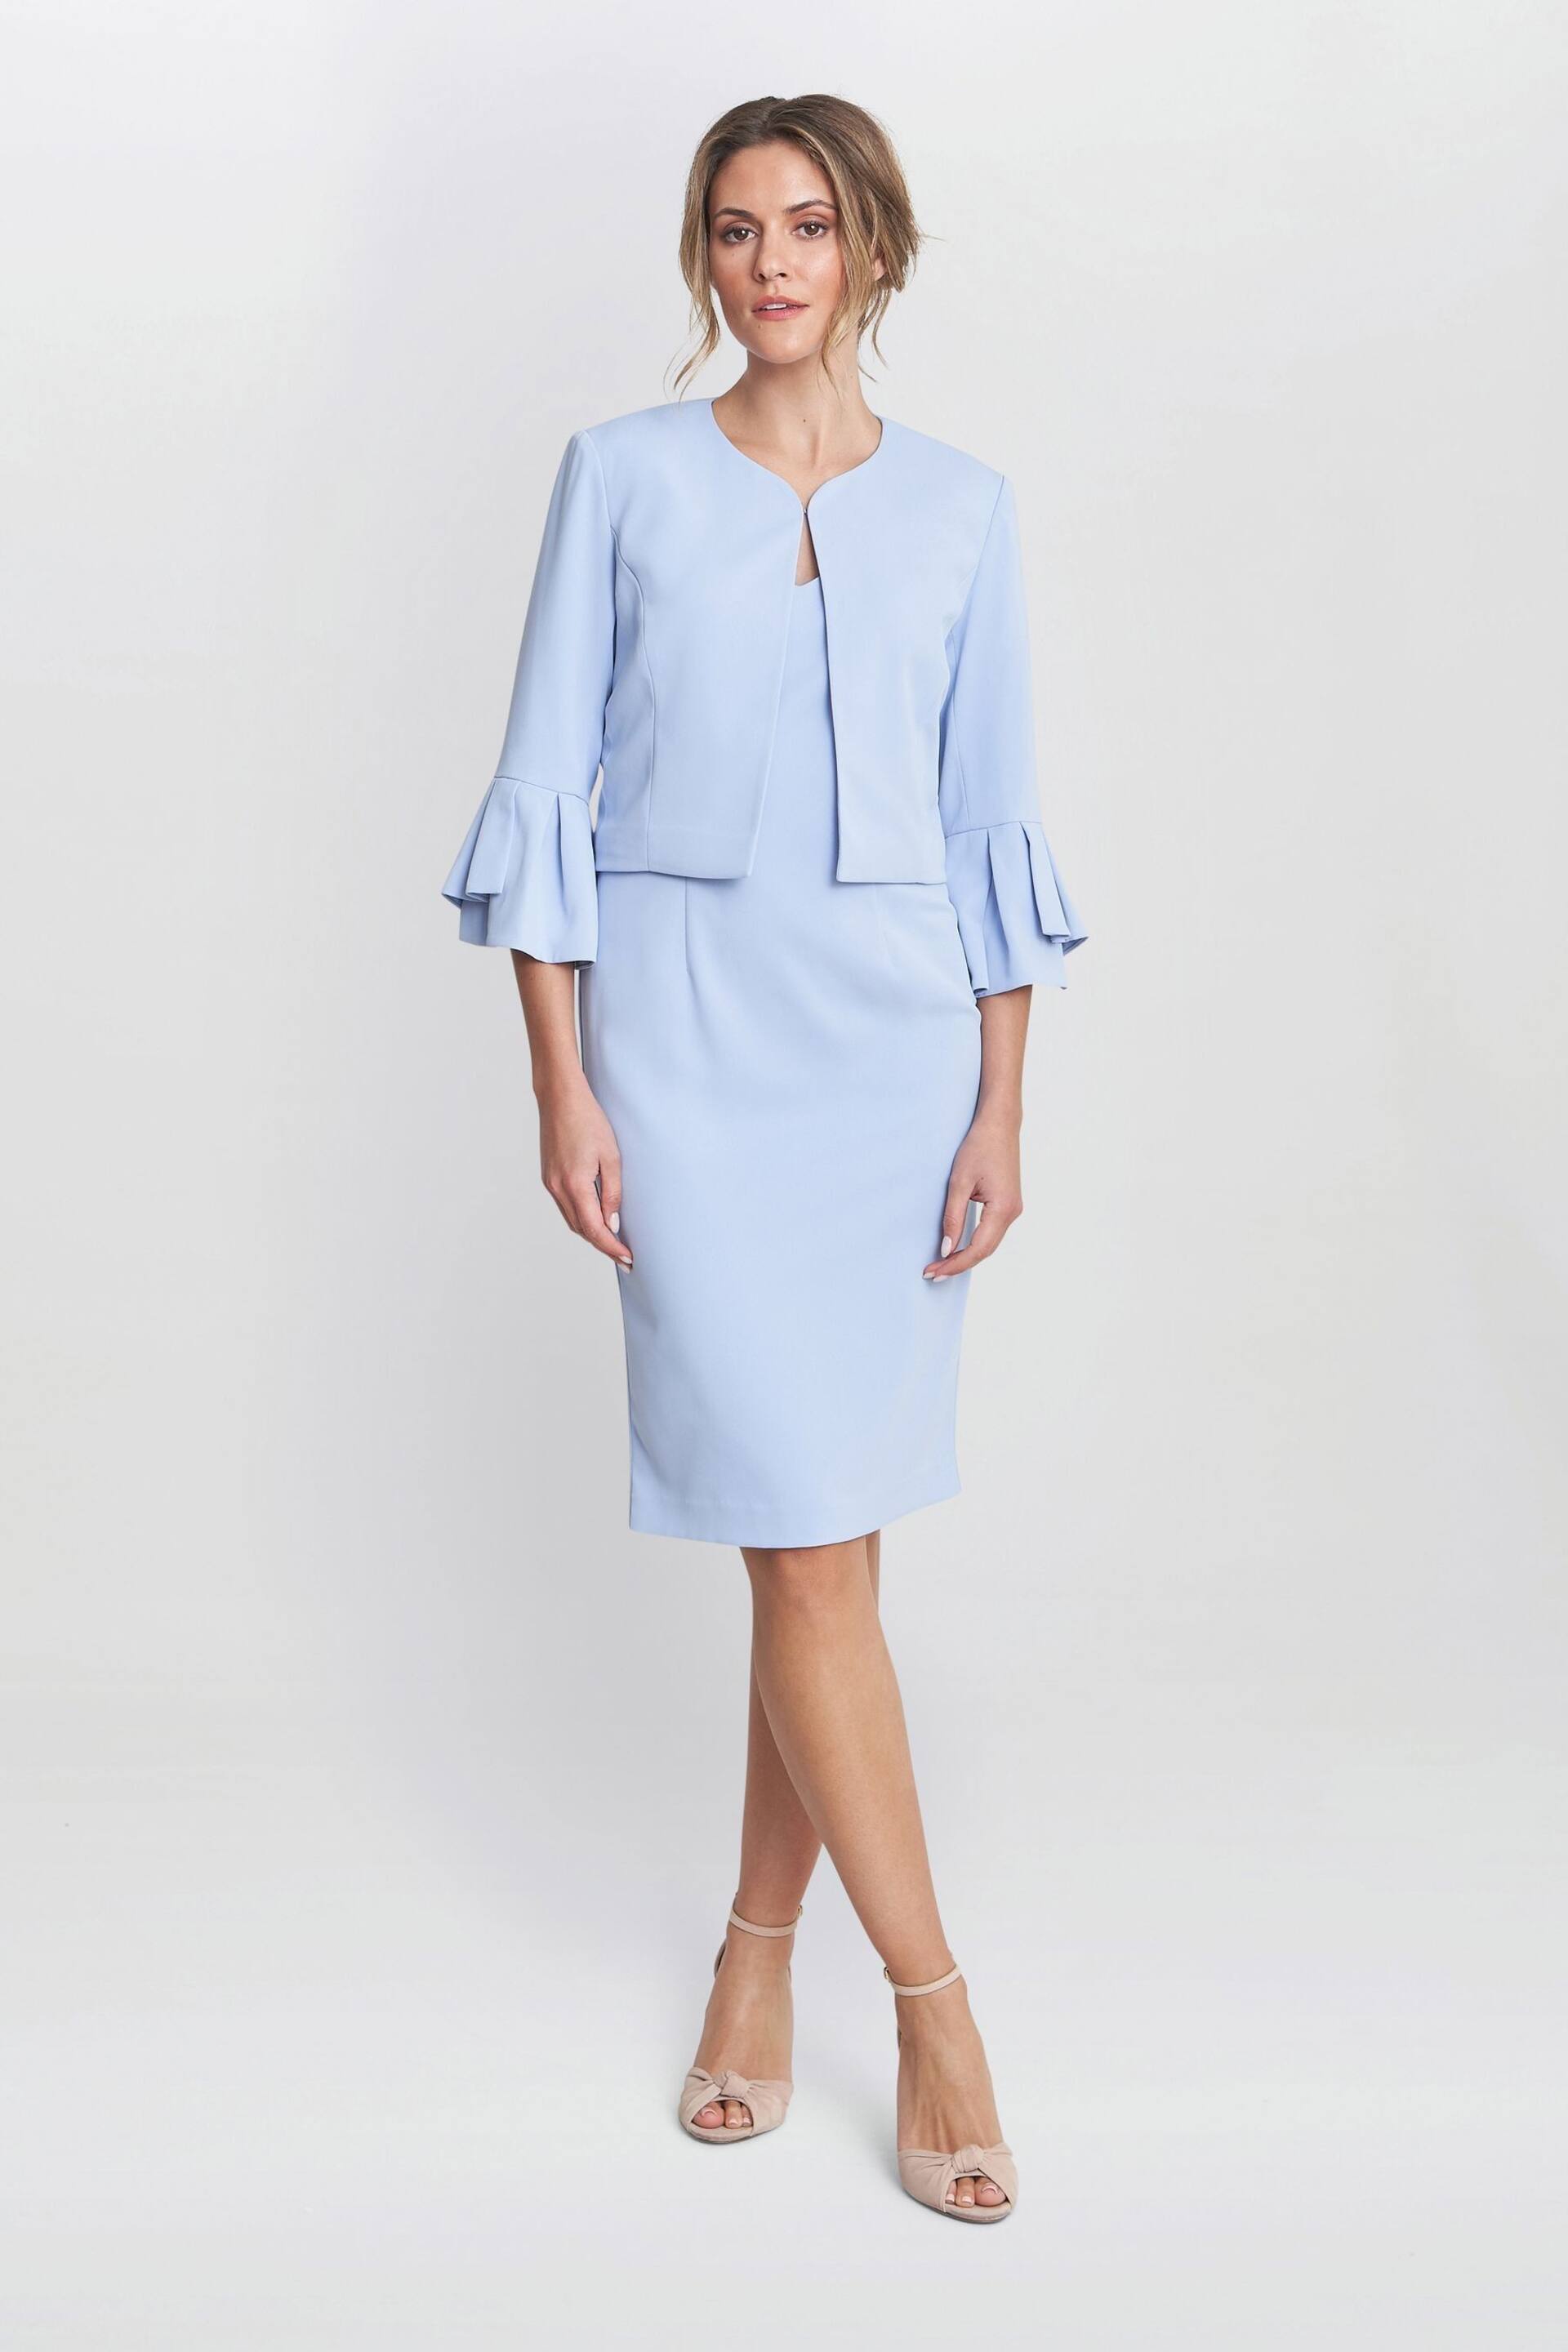 Gina Bacconi Blue Melissa Crepe Dress - Image 2 of 8